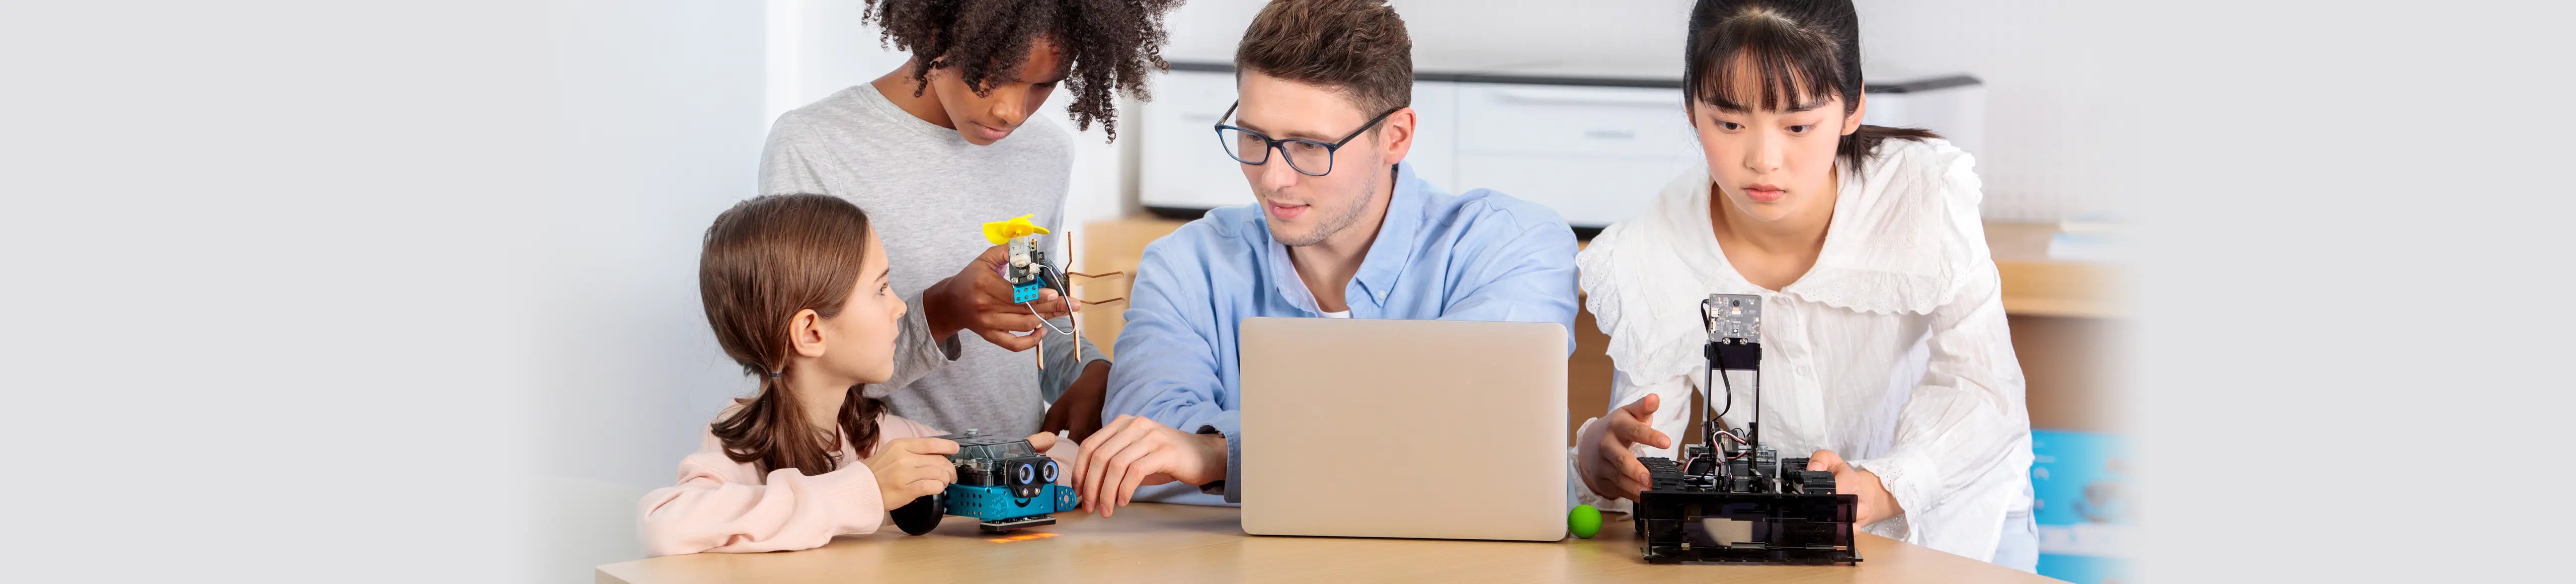 coding robot for kids